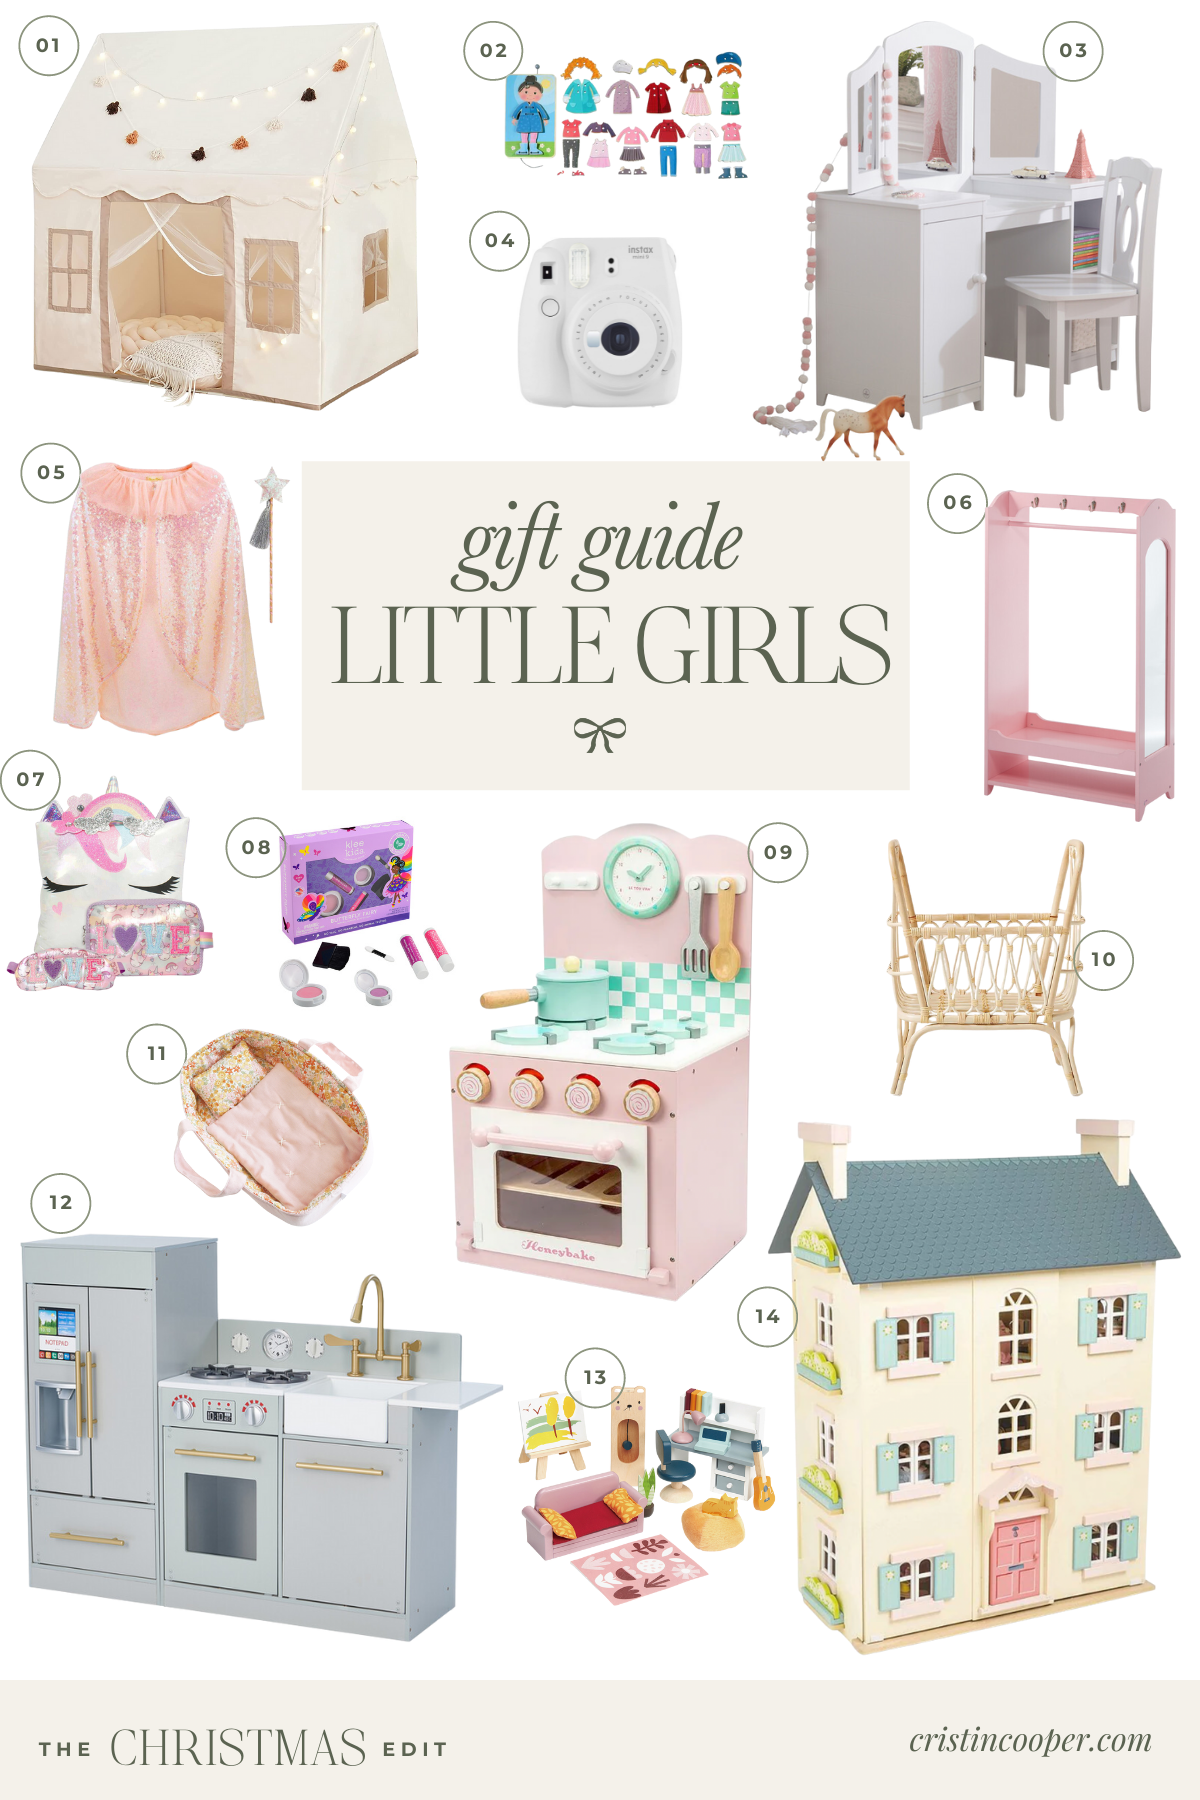 Gift guide for little girls